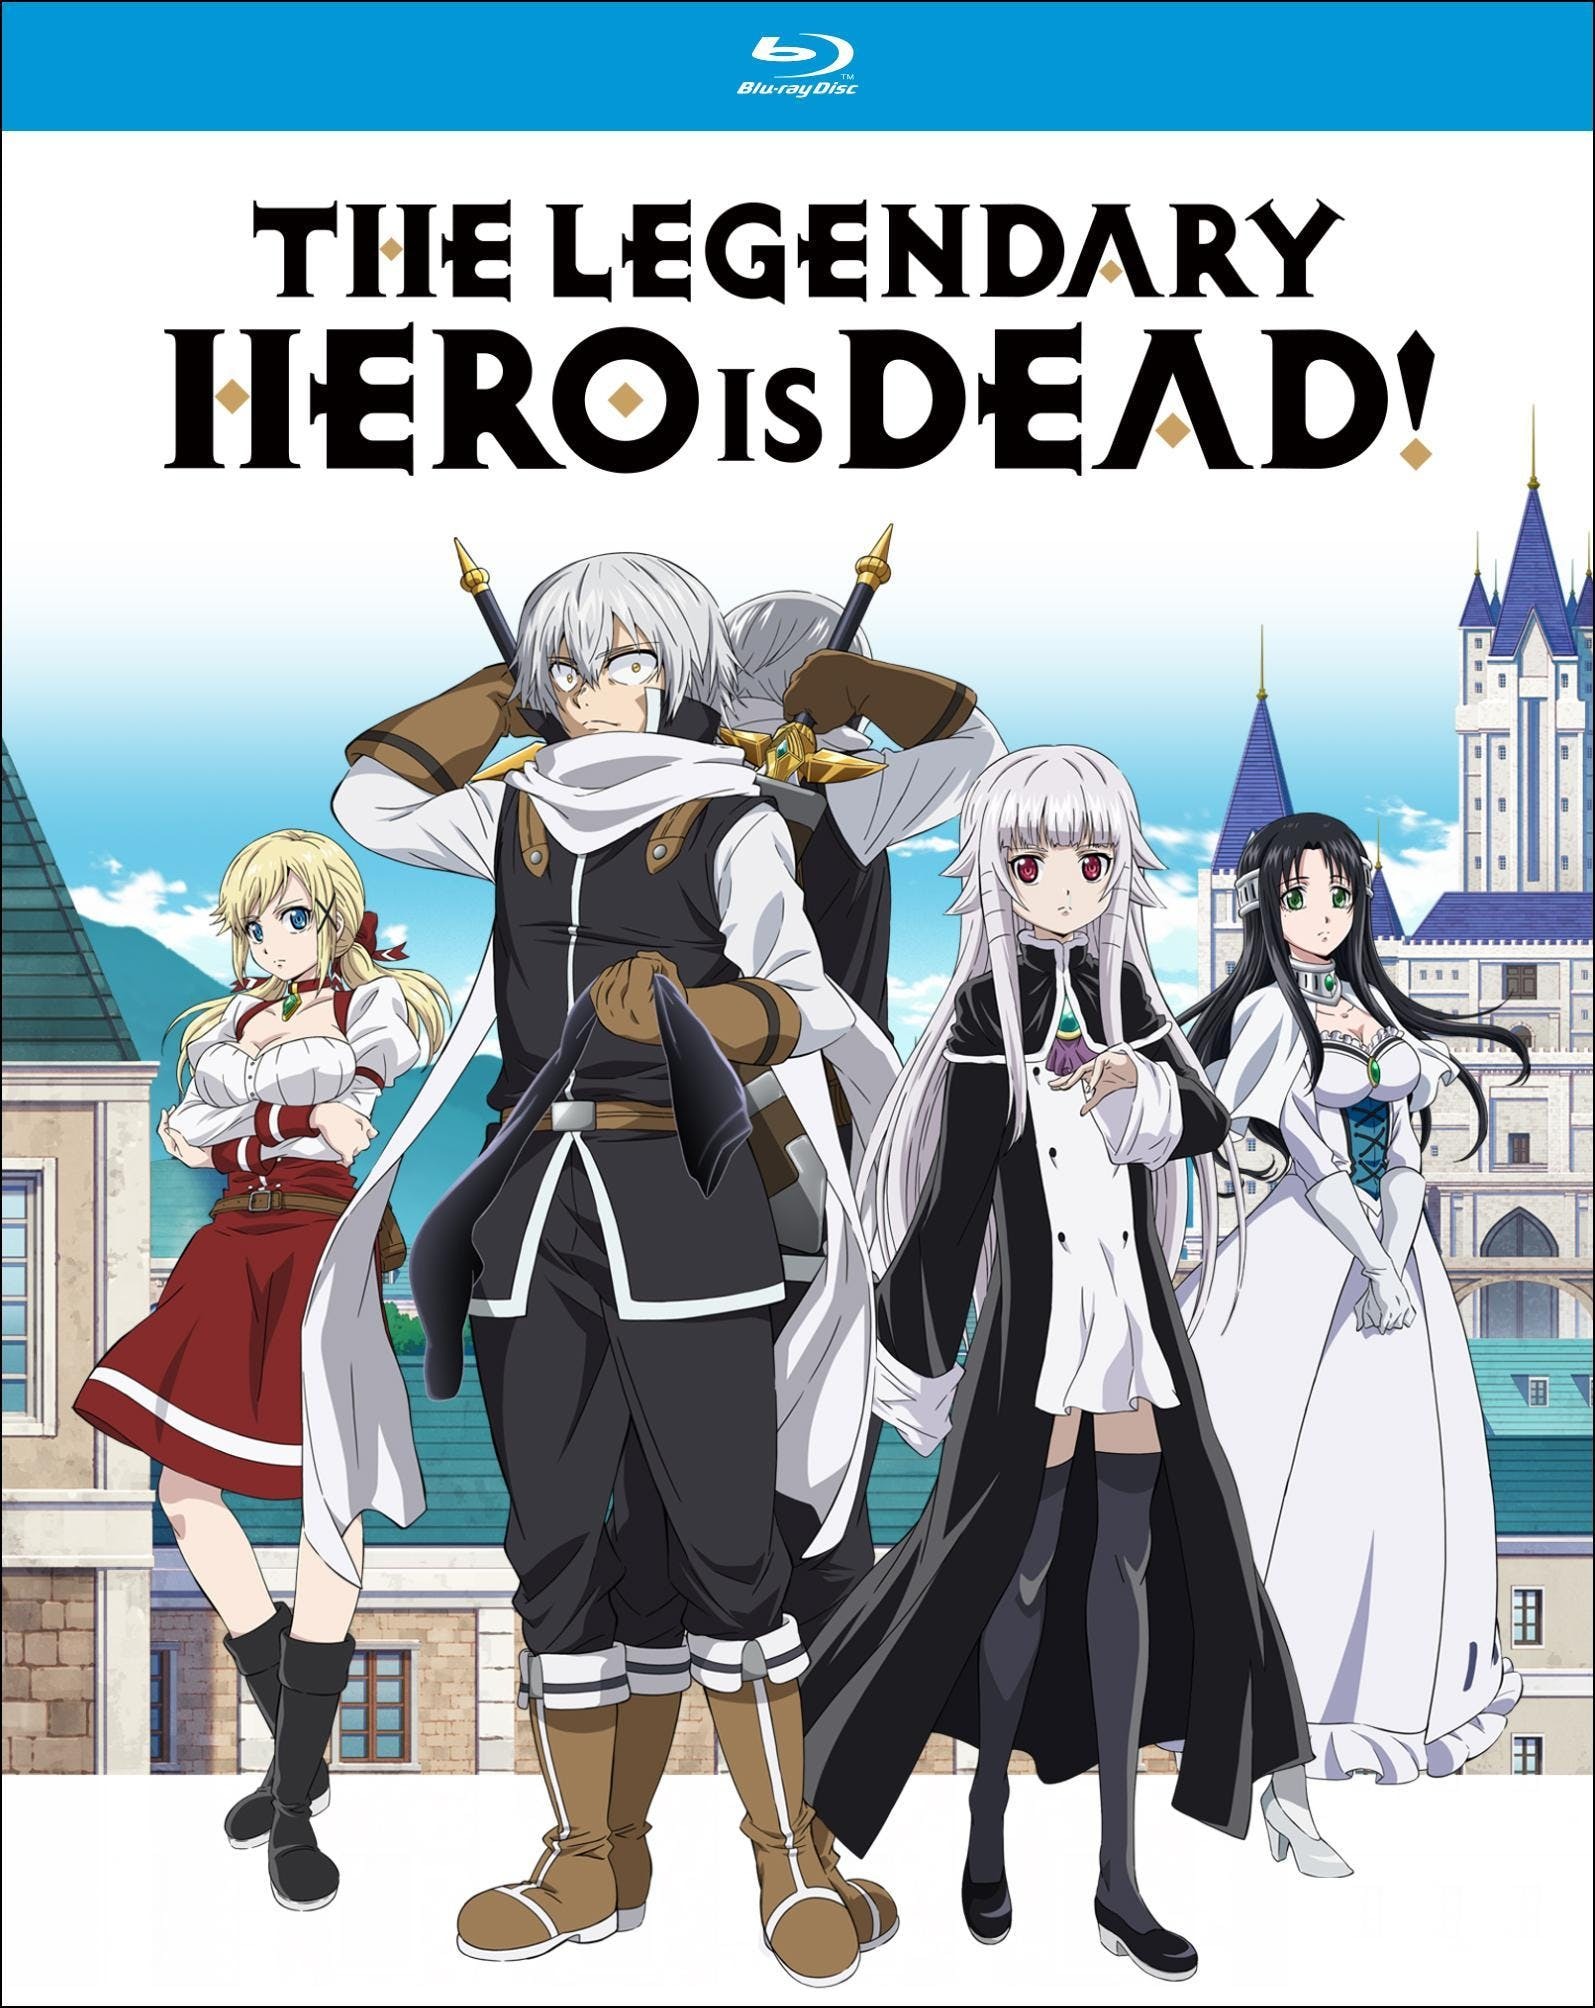 The Legendary Hero is Dead! - Wikidata